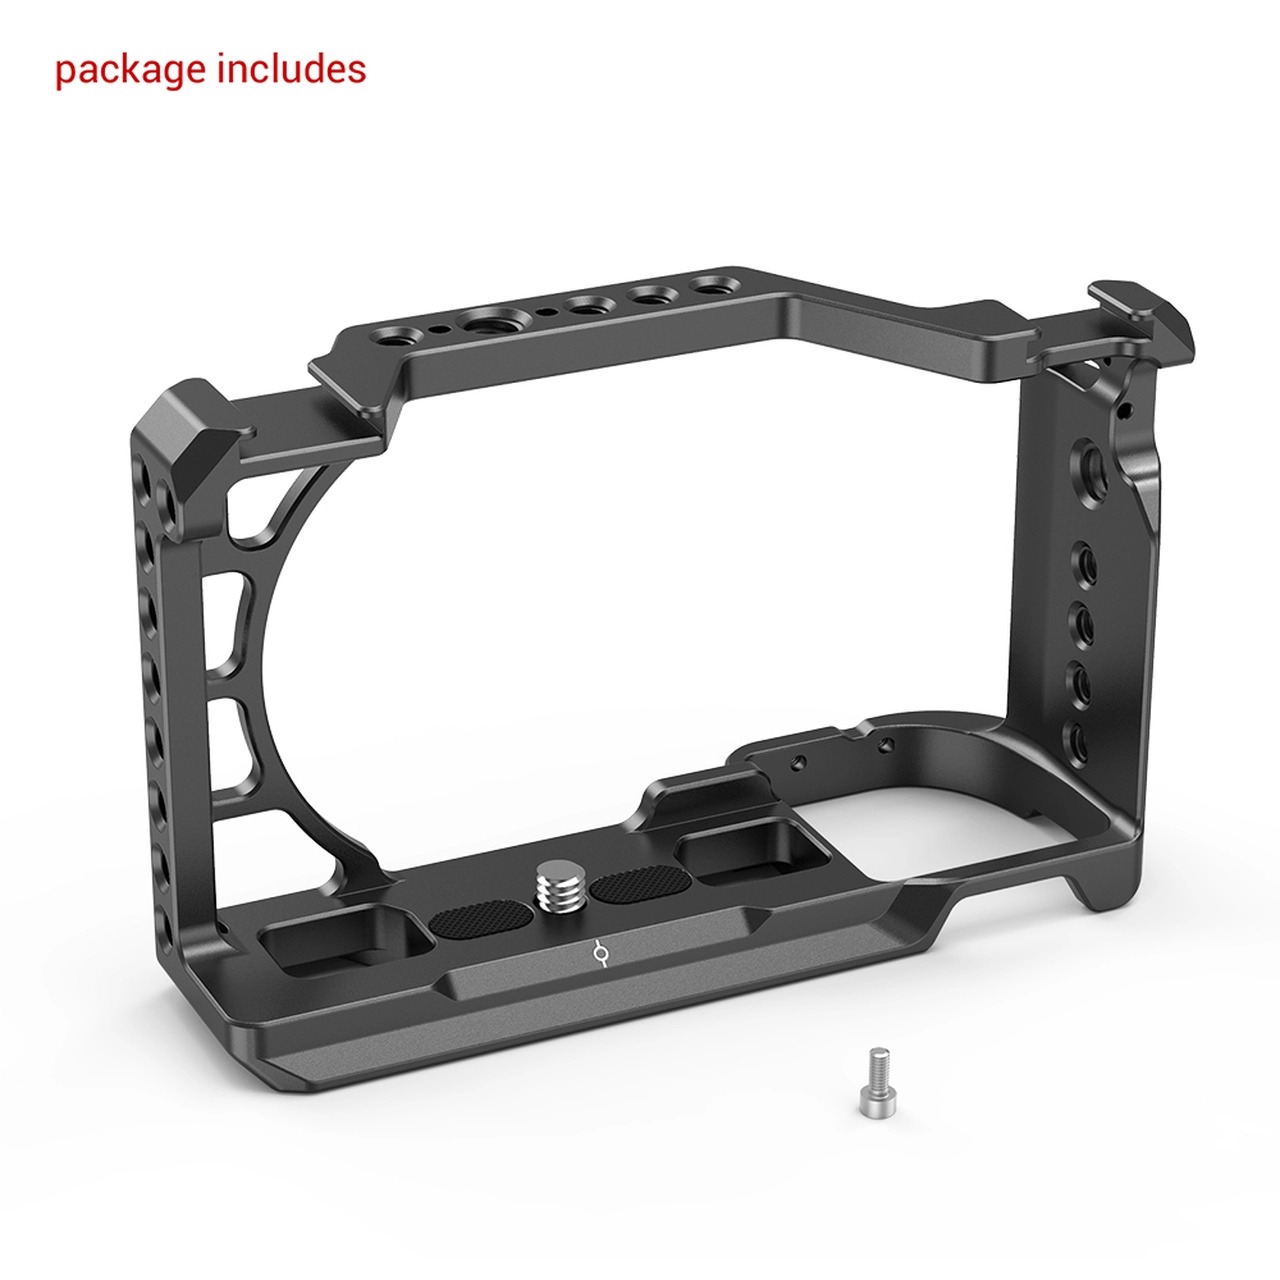 SmallRig Cage for Sony A6400 2310 ชุดริก เคจสำหรับกล้อง Sony A6300/A6400/A6500 ราคา 1230 บาท